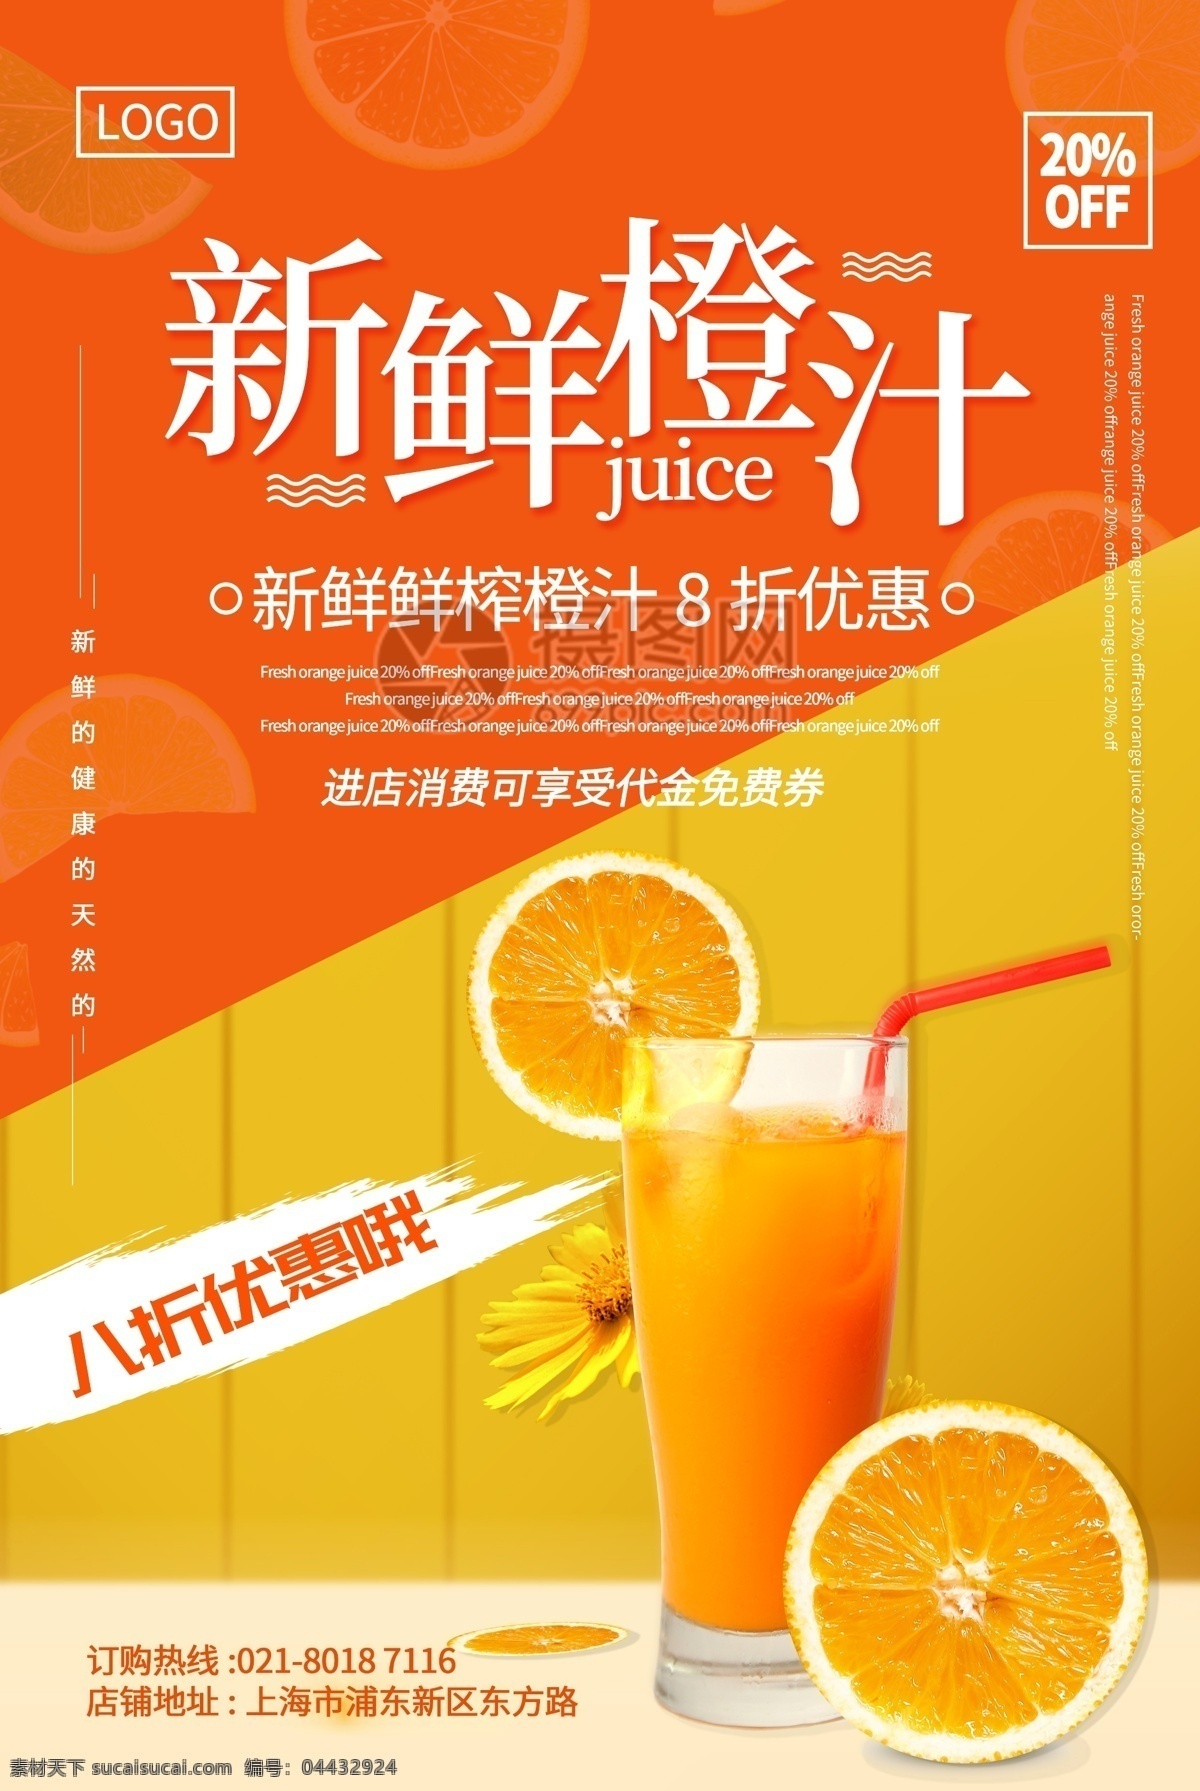 黄色 拼色 新鲜 橙汁 健康 天然 新鲜橙汁 果汁 饮料 饮品店 优惠 折扣 代金券 橙色 拼 色 促销 海报